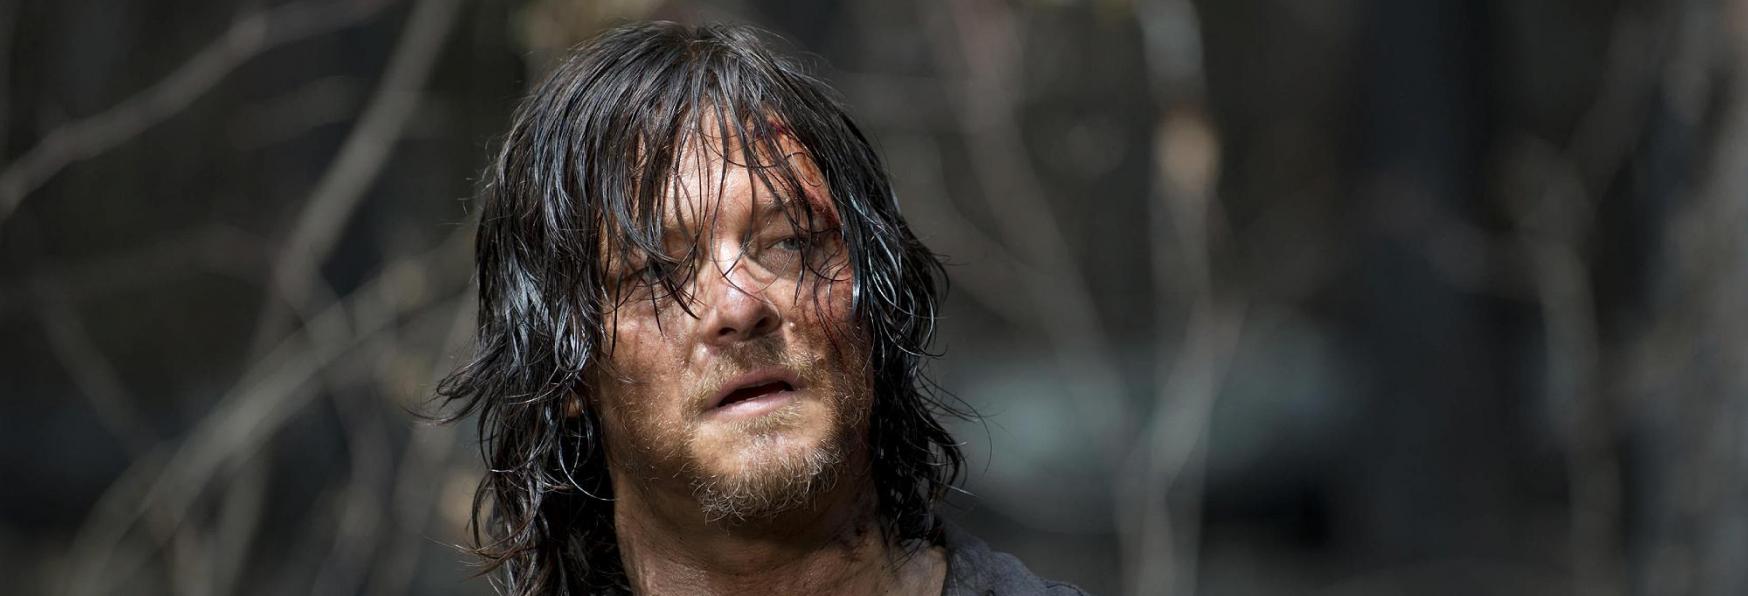 The Walking Dead: Daryl Dixon - AMC svela il nuovo Teaser e il Poster